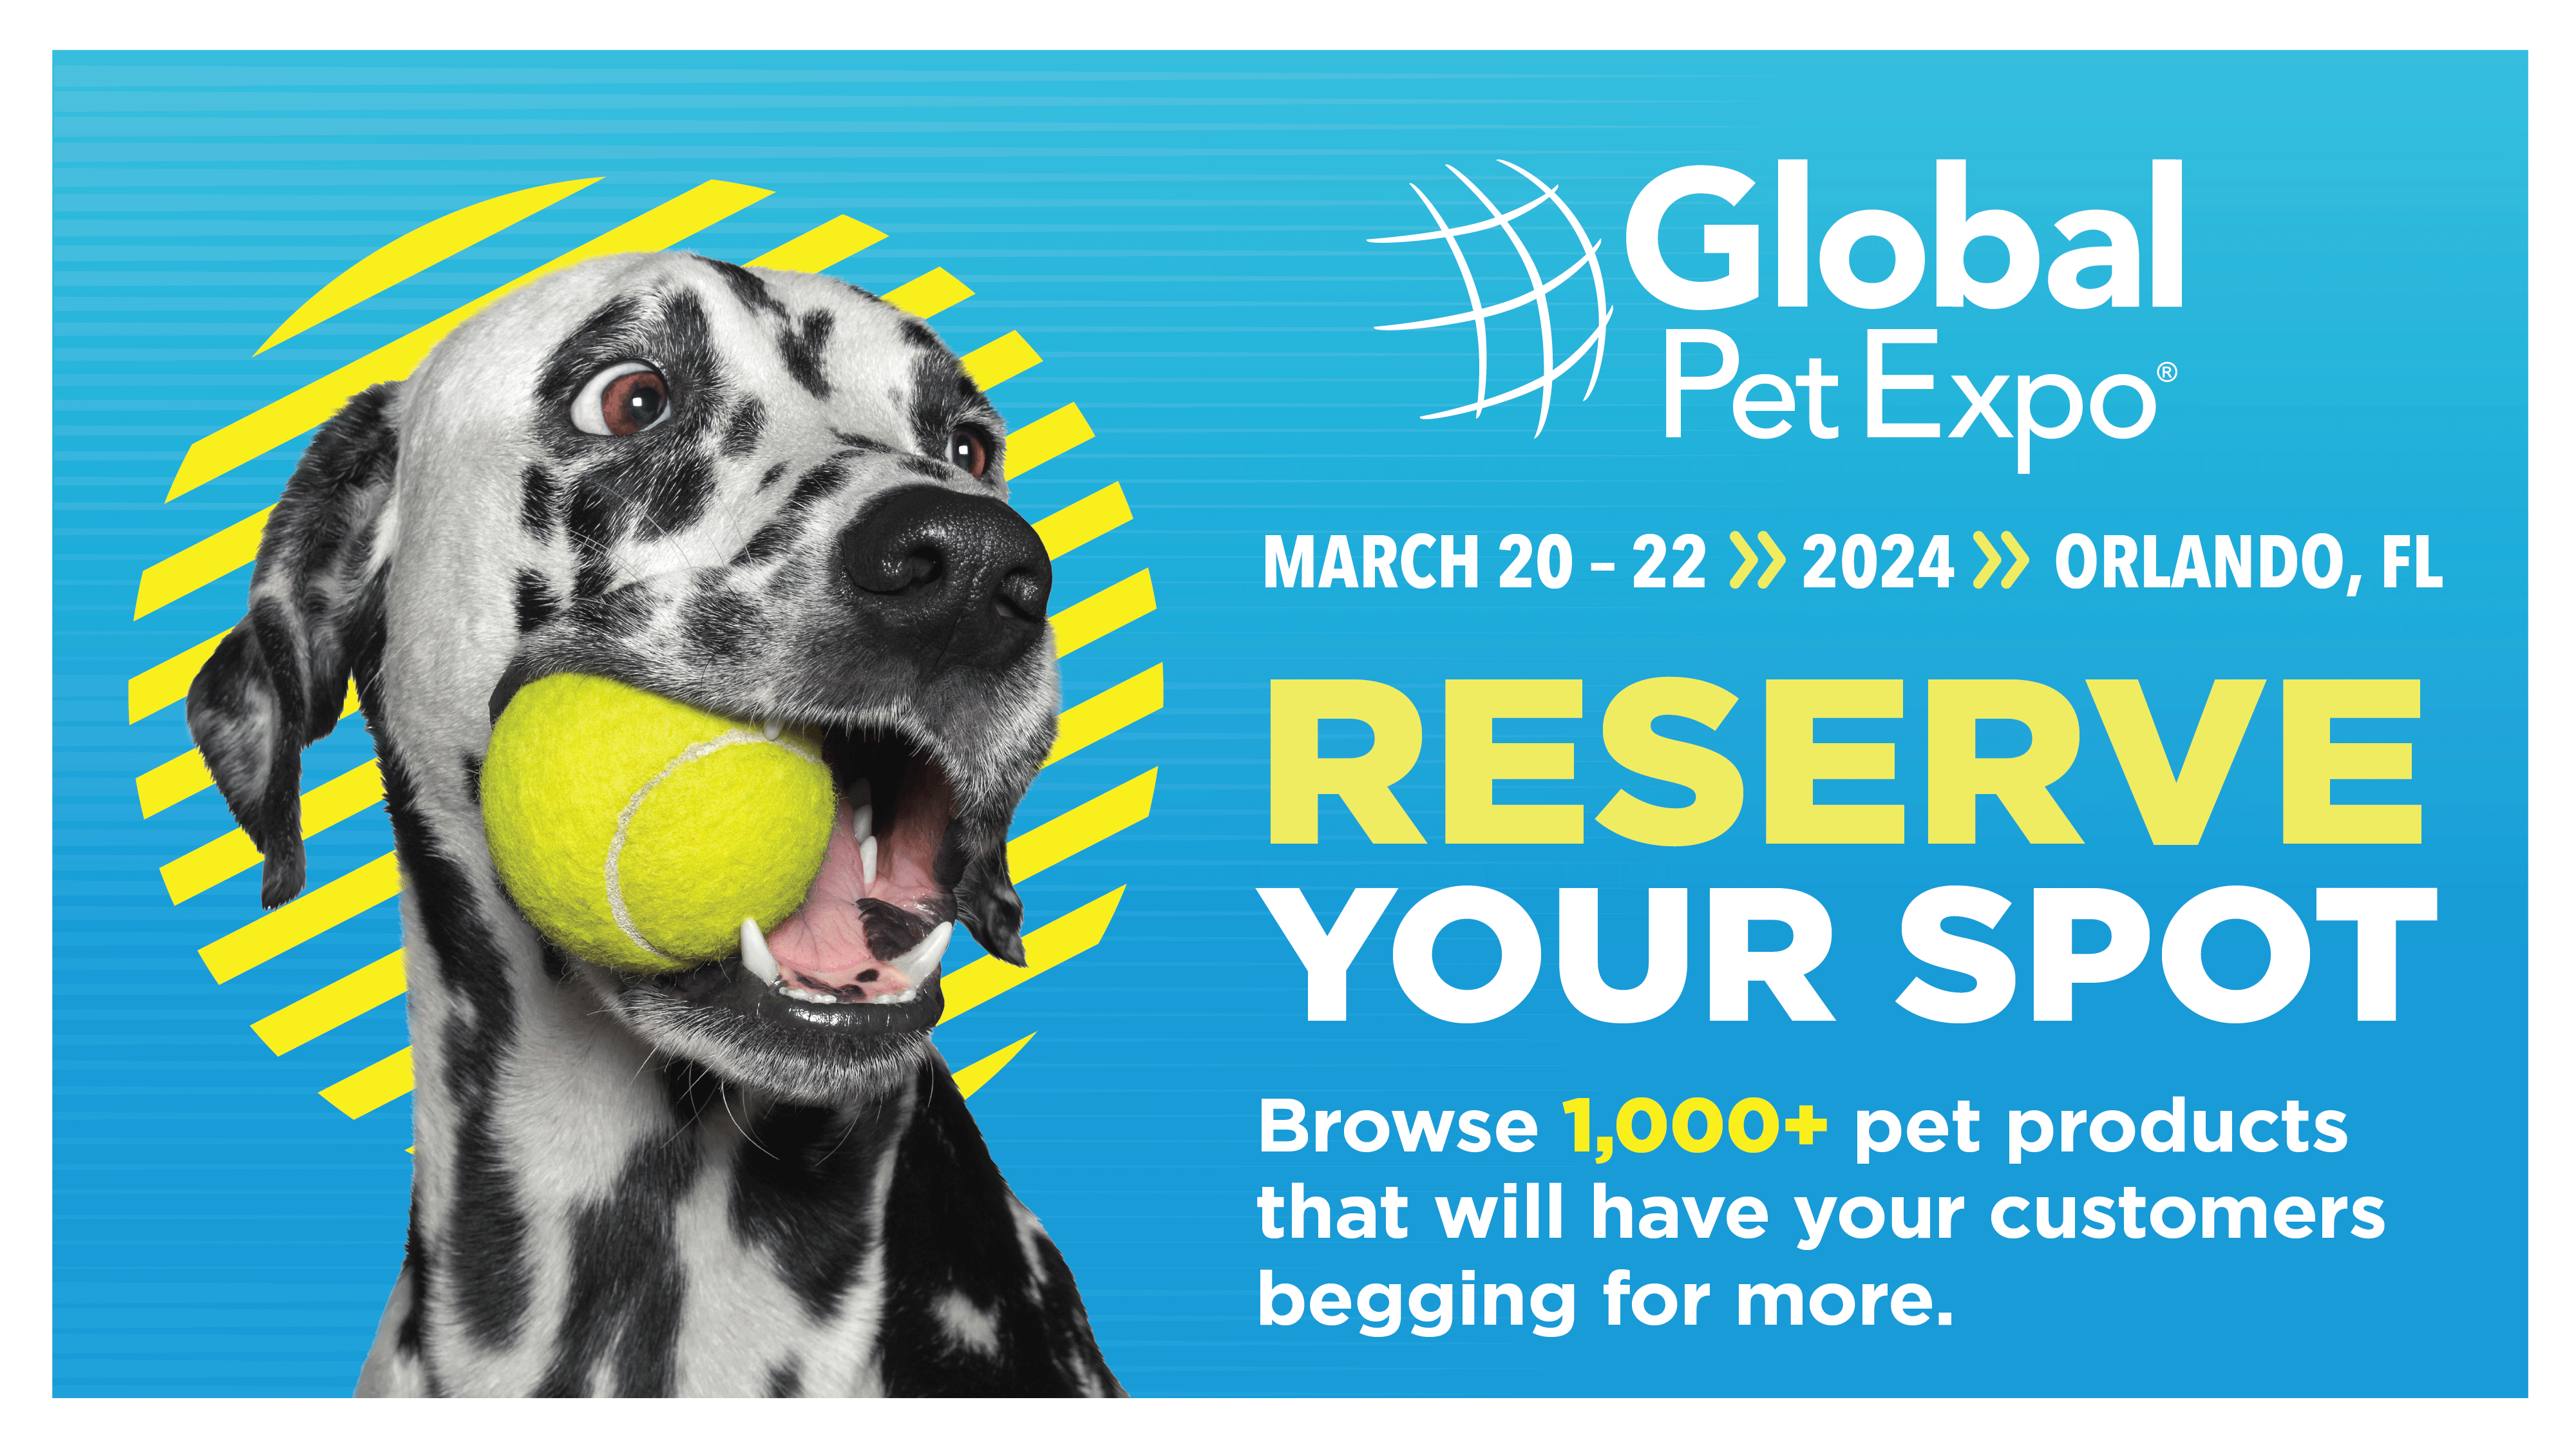 Global Pet Expo March 20-22, 2024, Orlando Florida